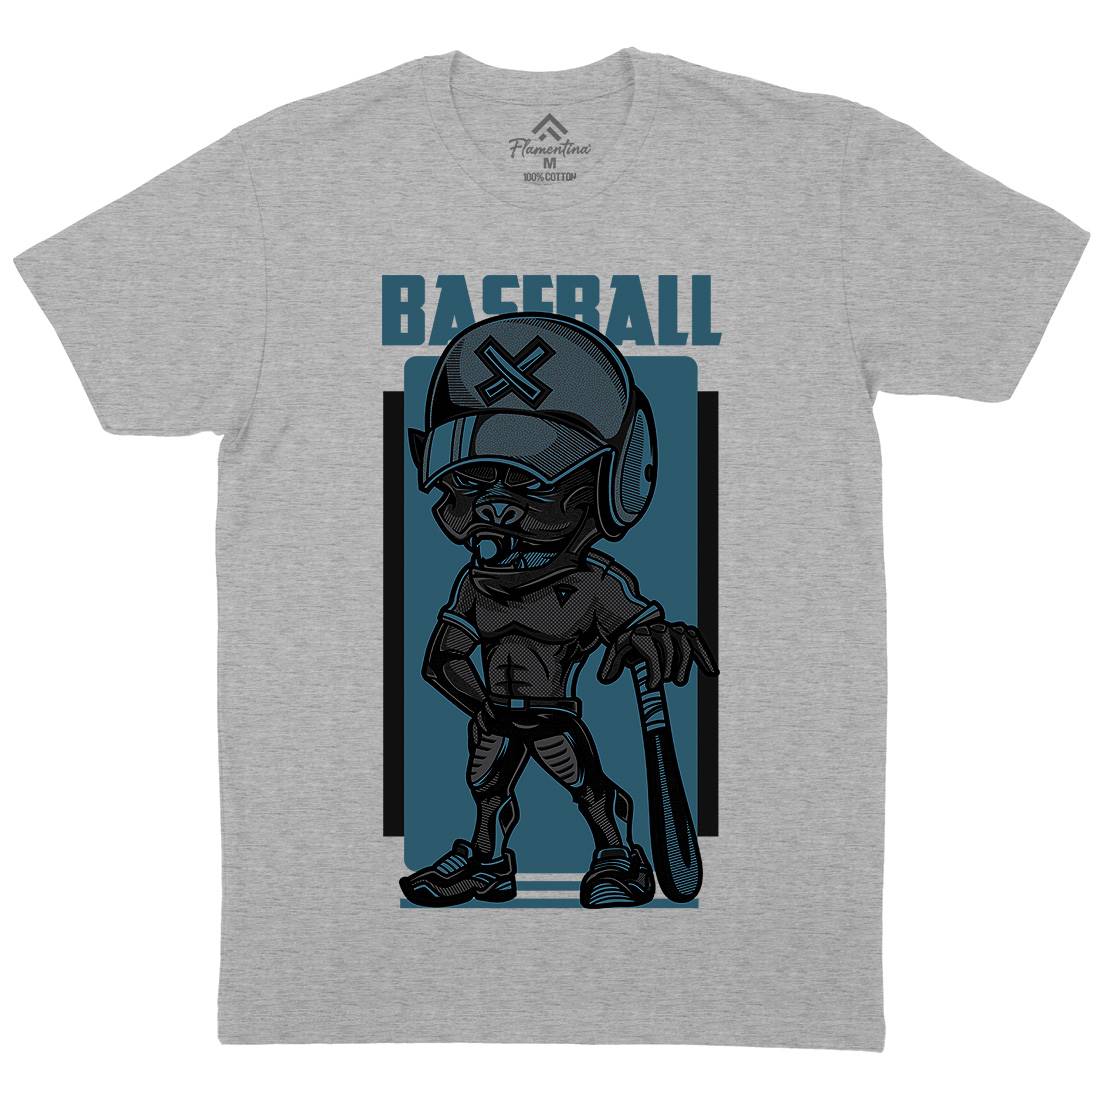 Baseball Mens Crew Neck T-Shirt Sport D710